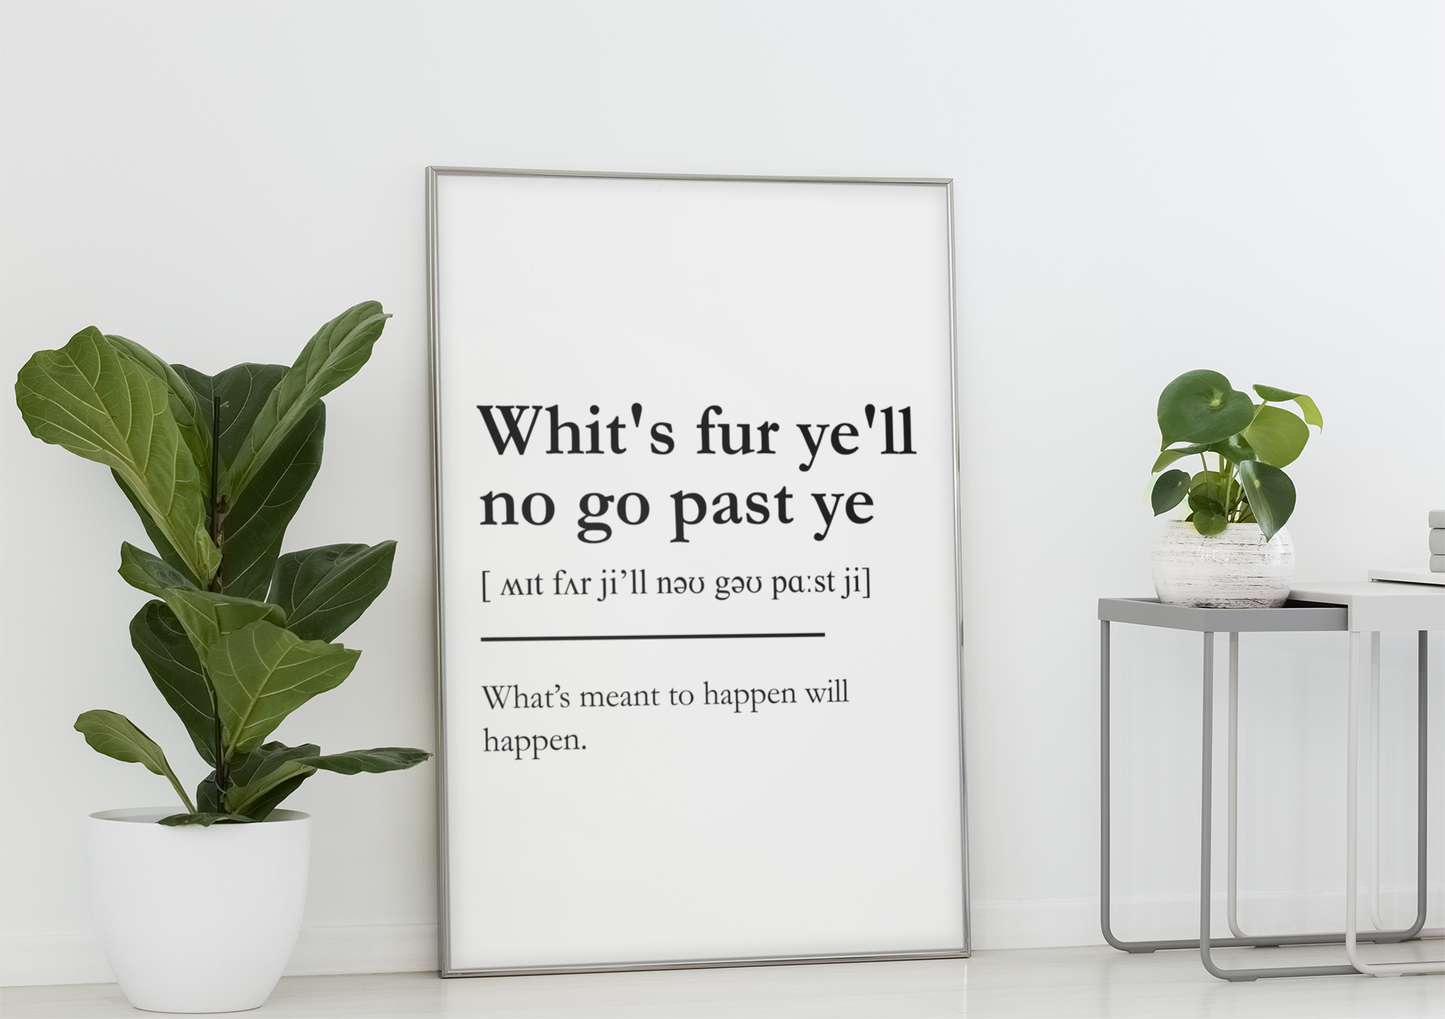 "Whit's fur ye'll no go past ye" - Scottish Slang